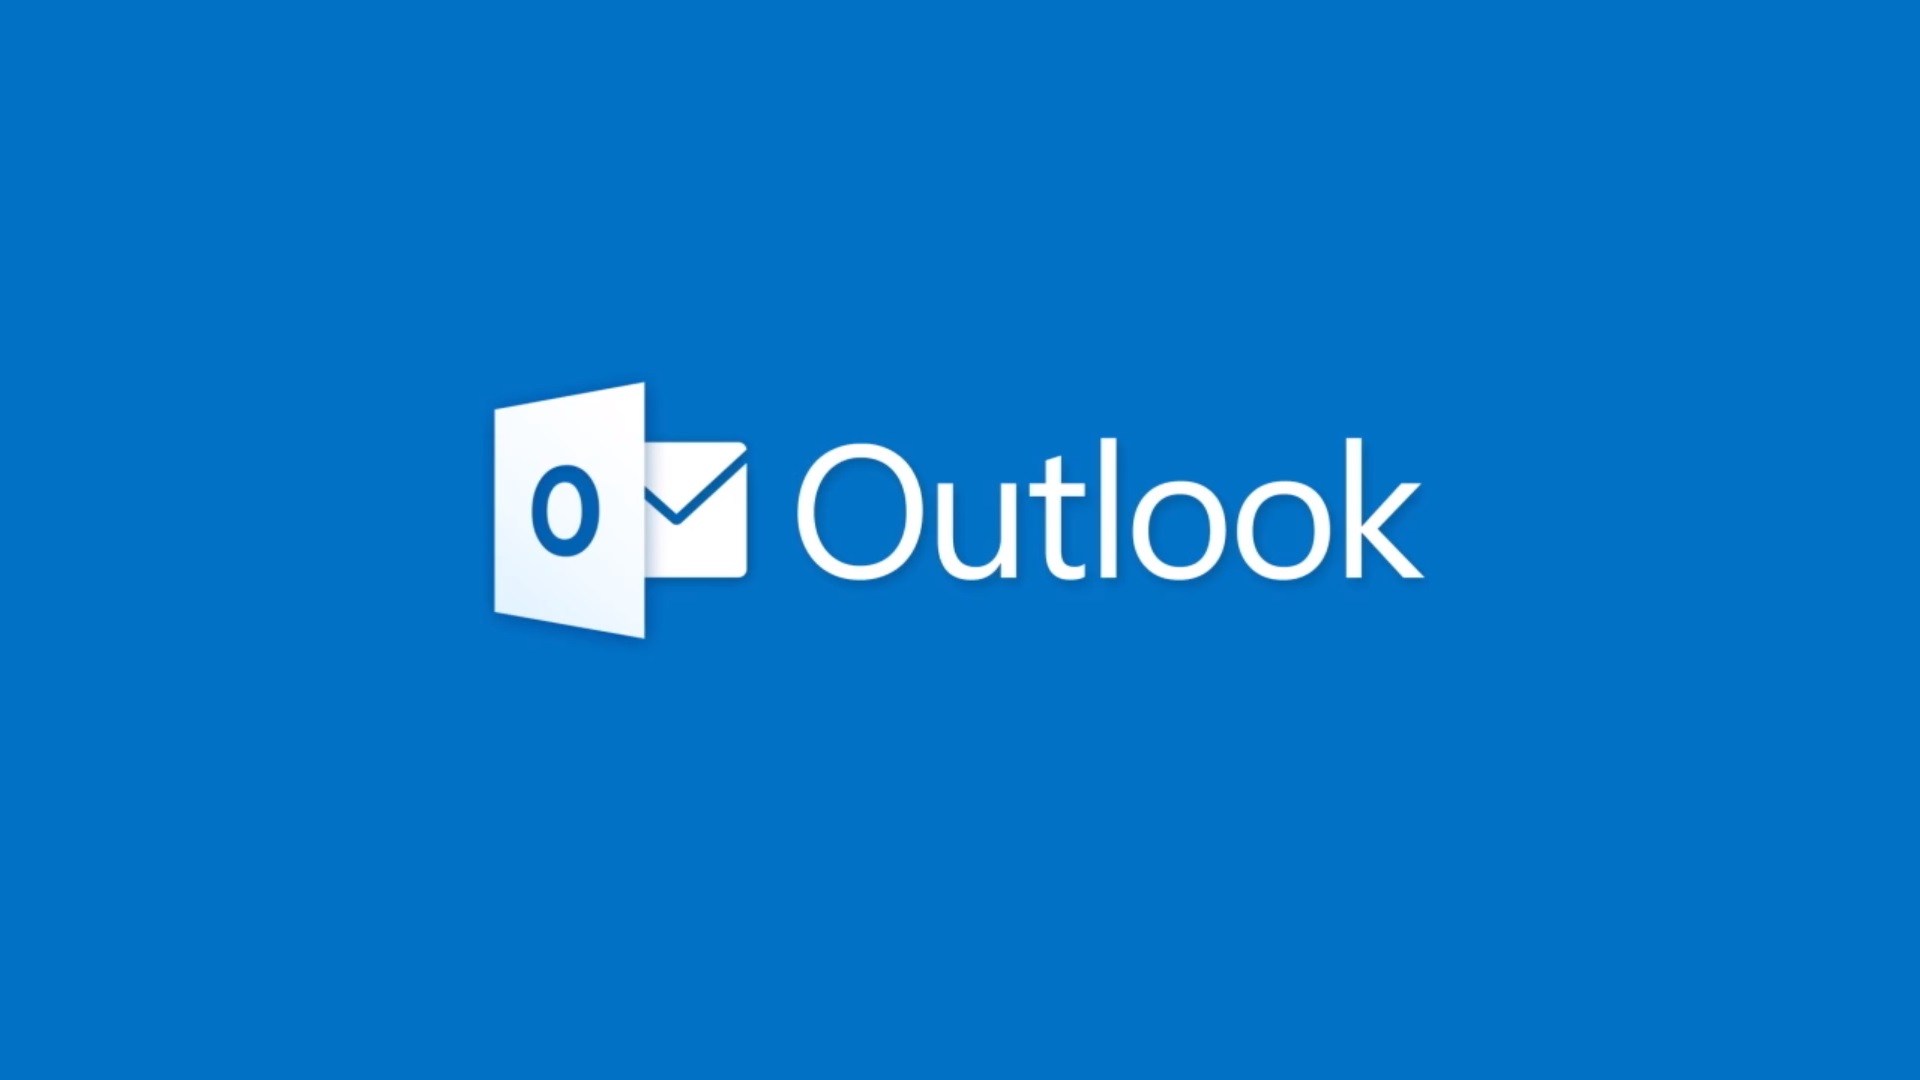  Outlook يطلق عدد من الميزات الجديدة لمساعدتك على إنجاز المزيد من المهام